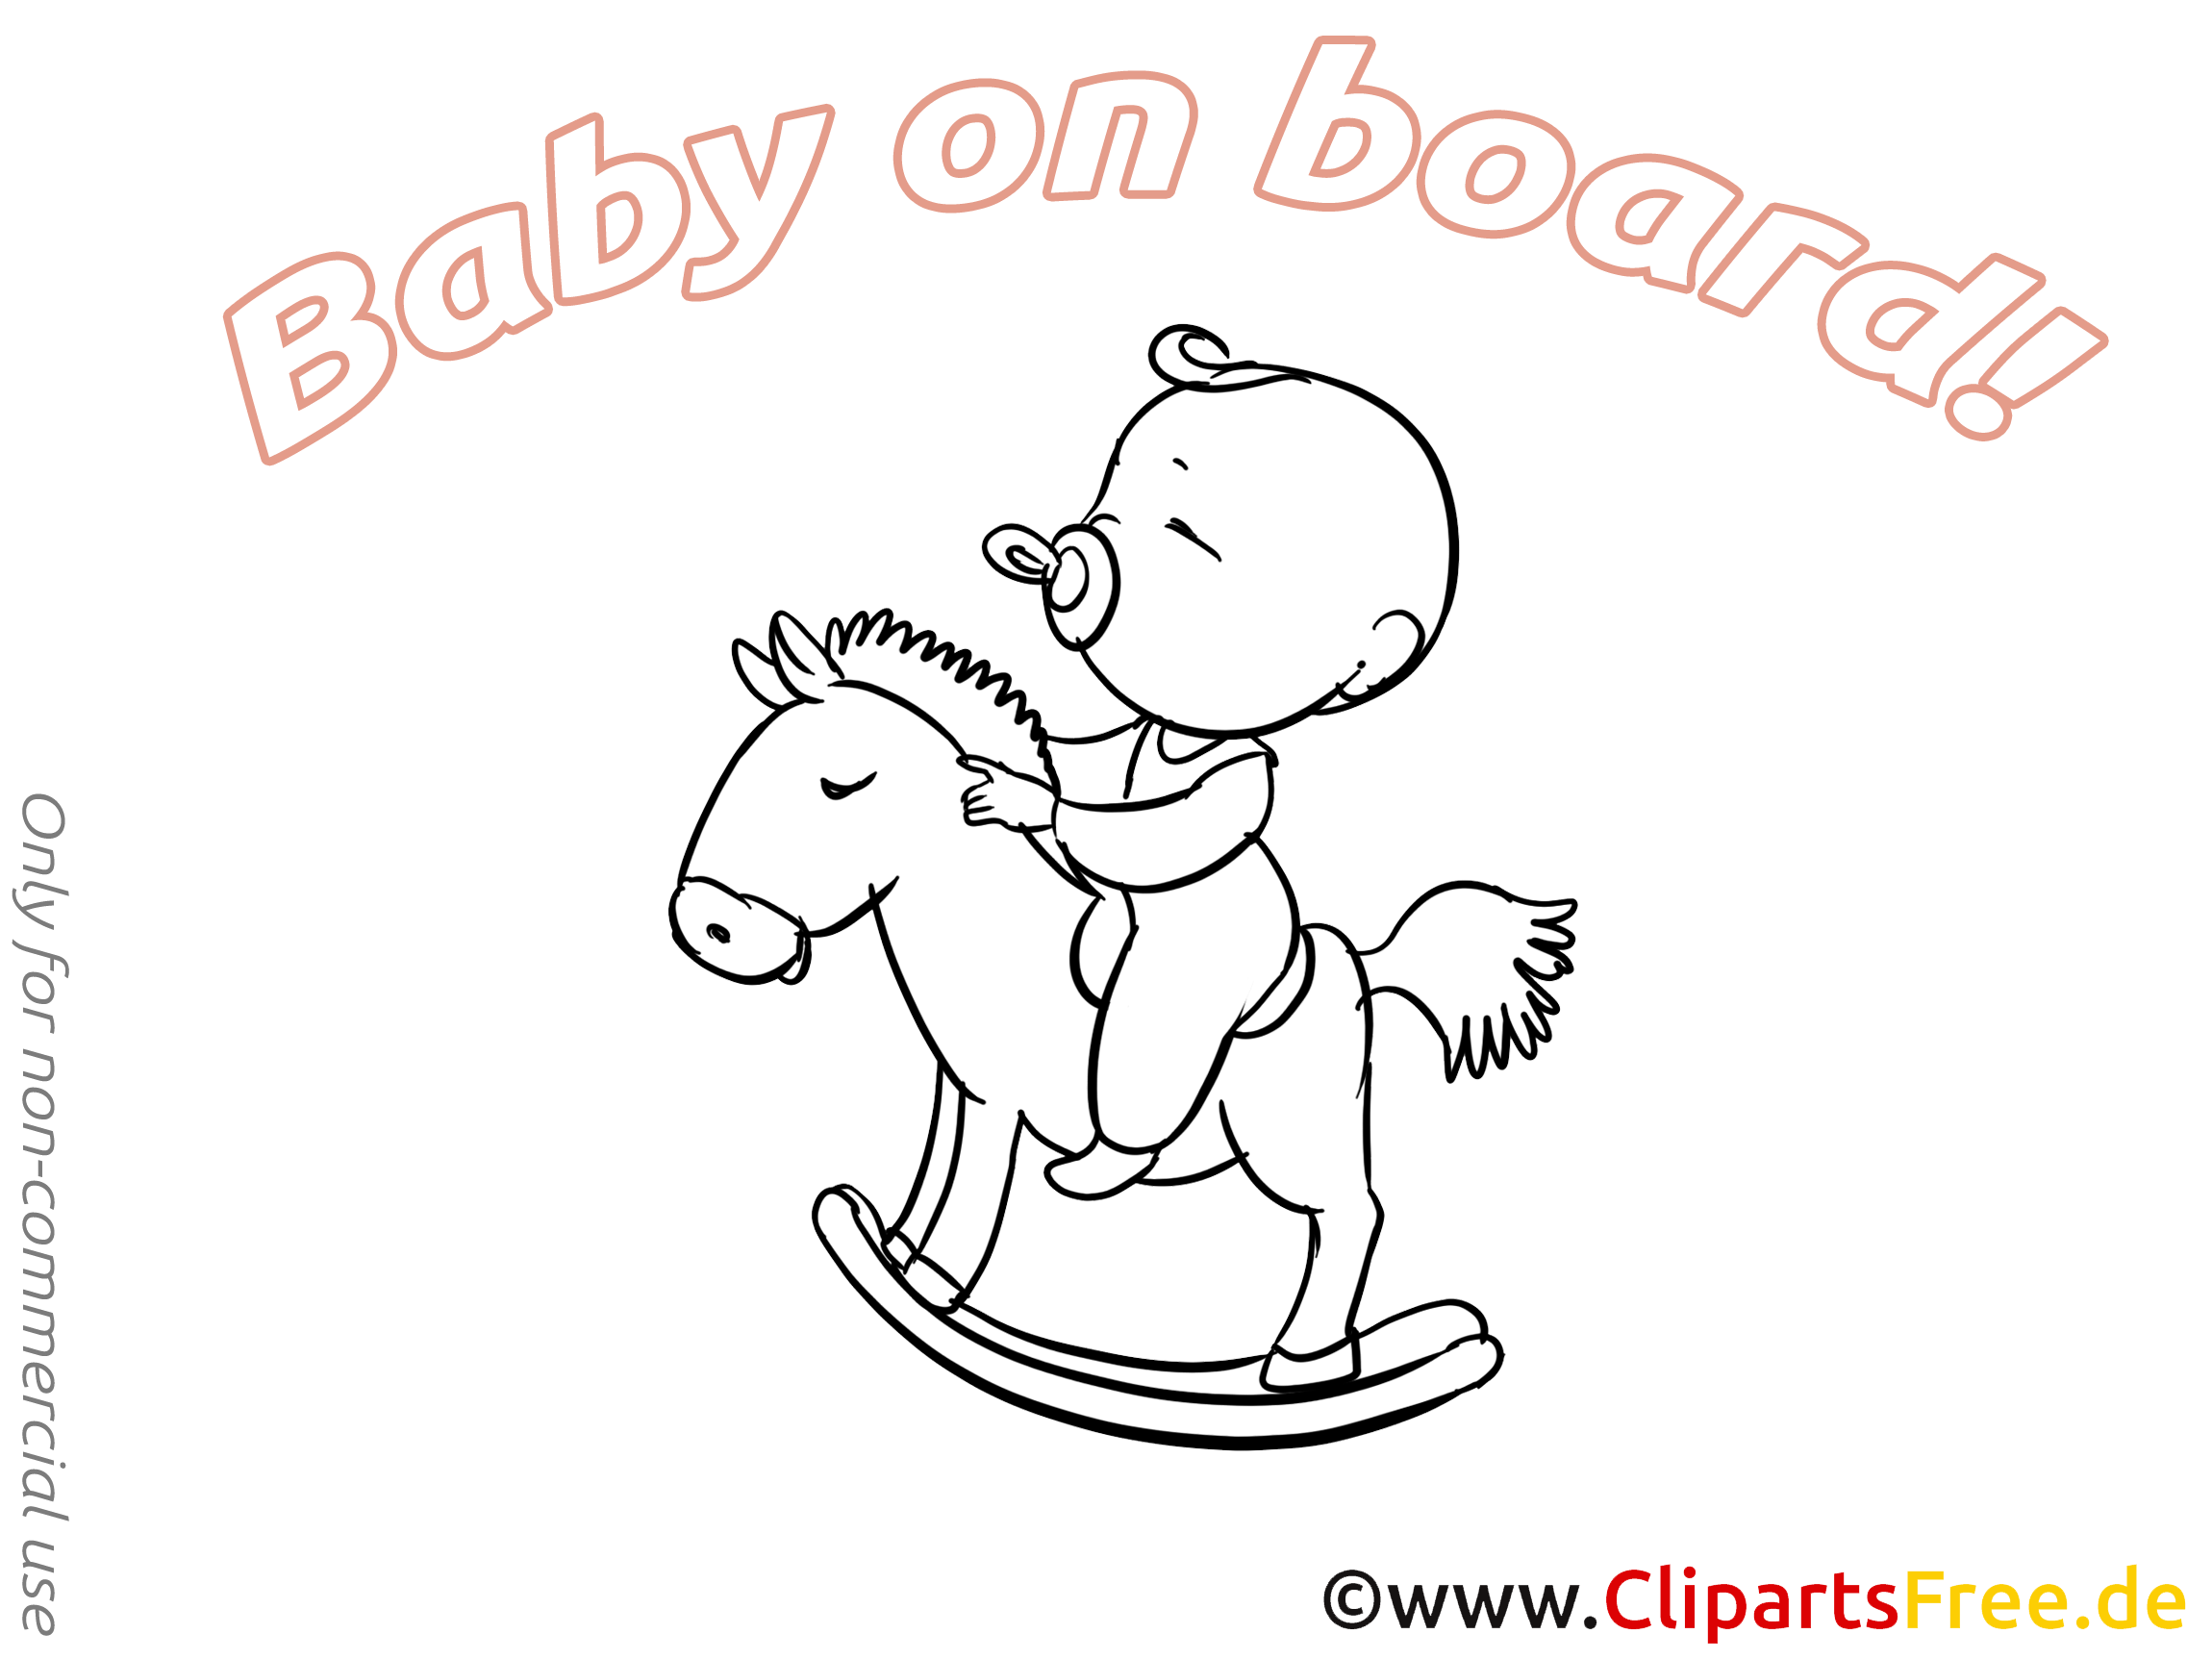 Cheval en bois illustration à colorier – Bébé à bord images